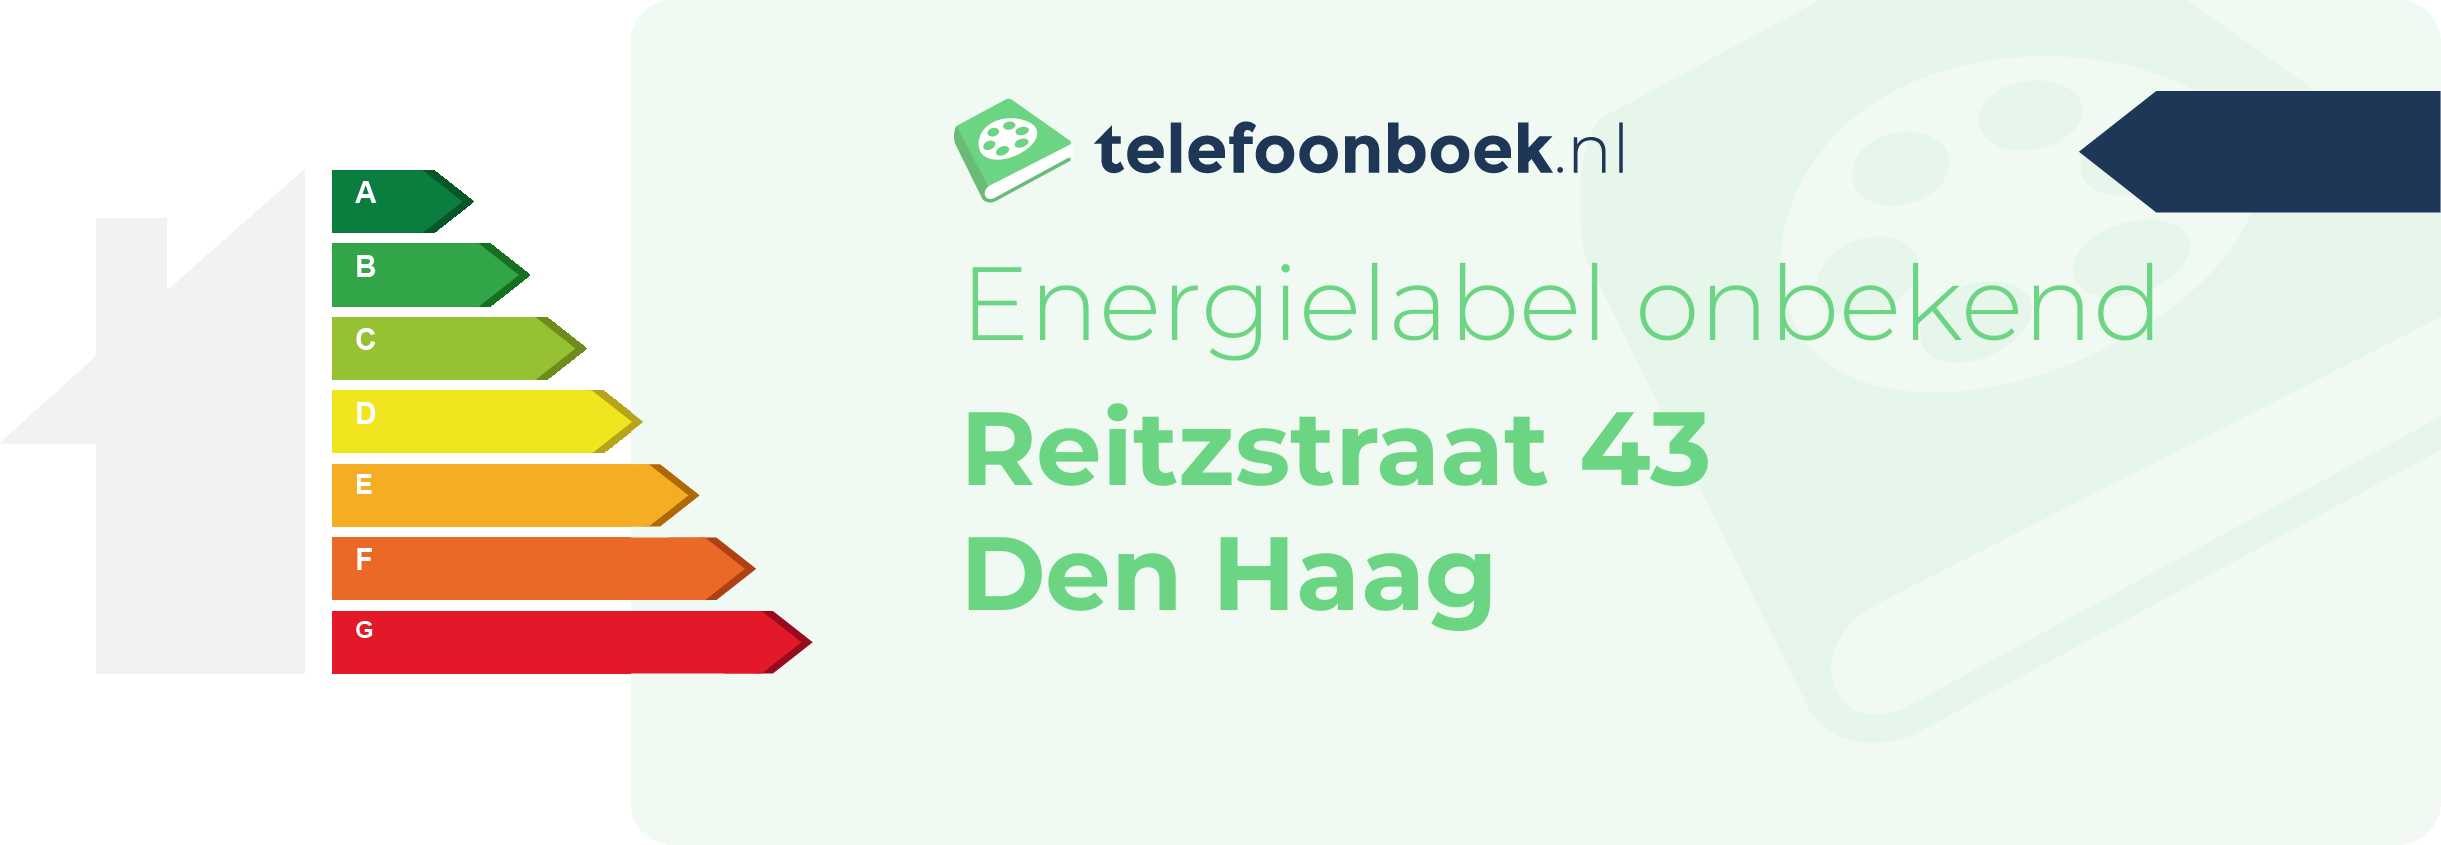 Energielabel Reitzstraat 43 Den Haag